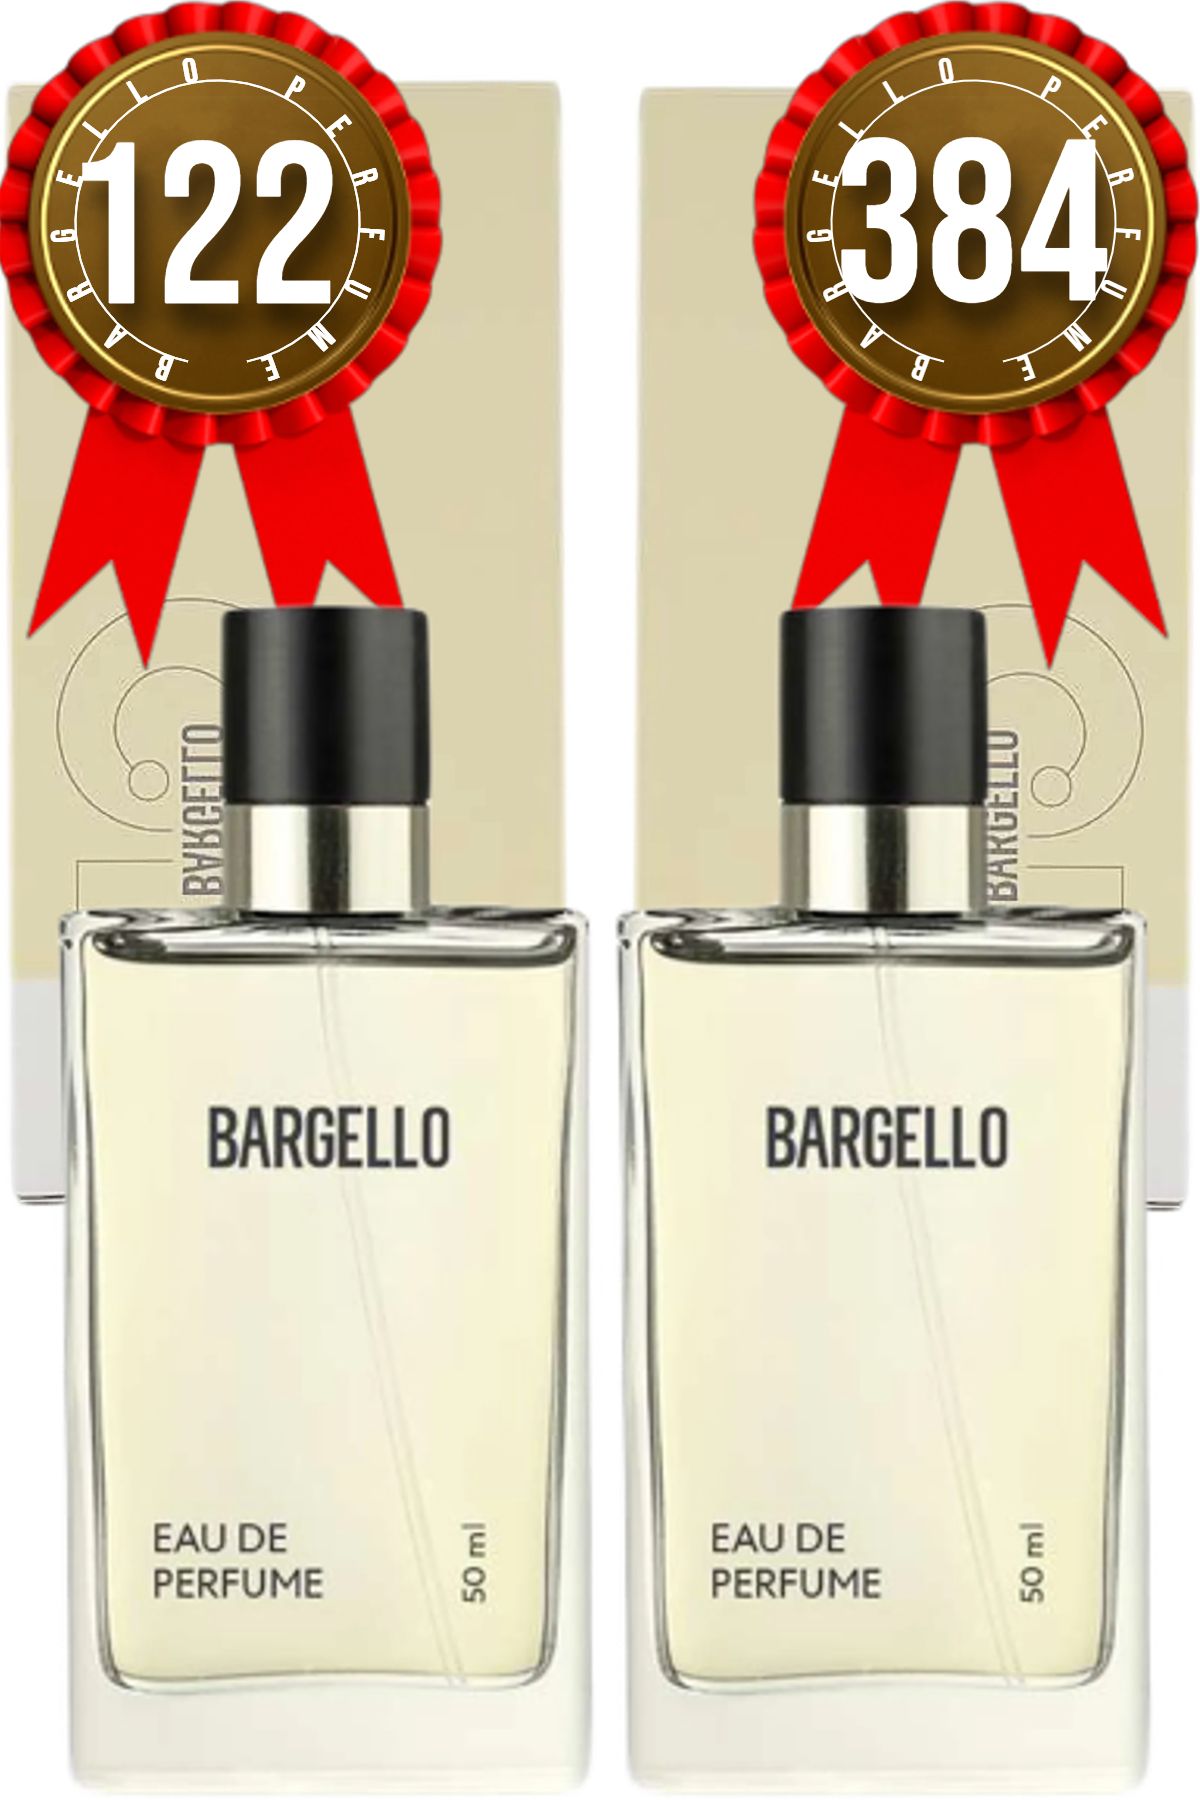 Bargello 122 Edp Oriental Kadın Parfüm 384 Edp Floral Kadın Parfüm 50 ml 2 Adet Ürün